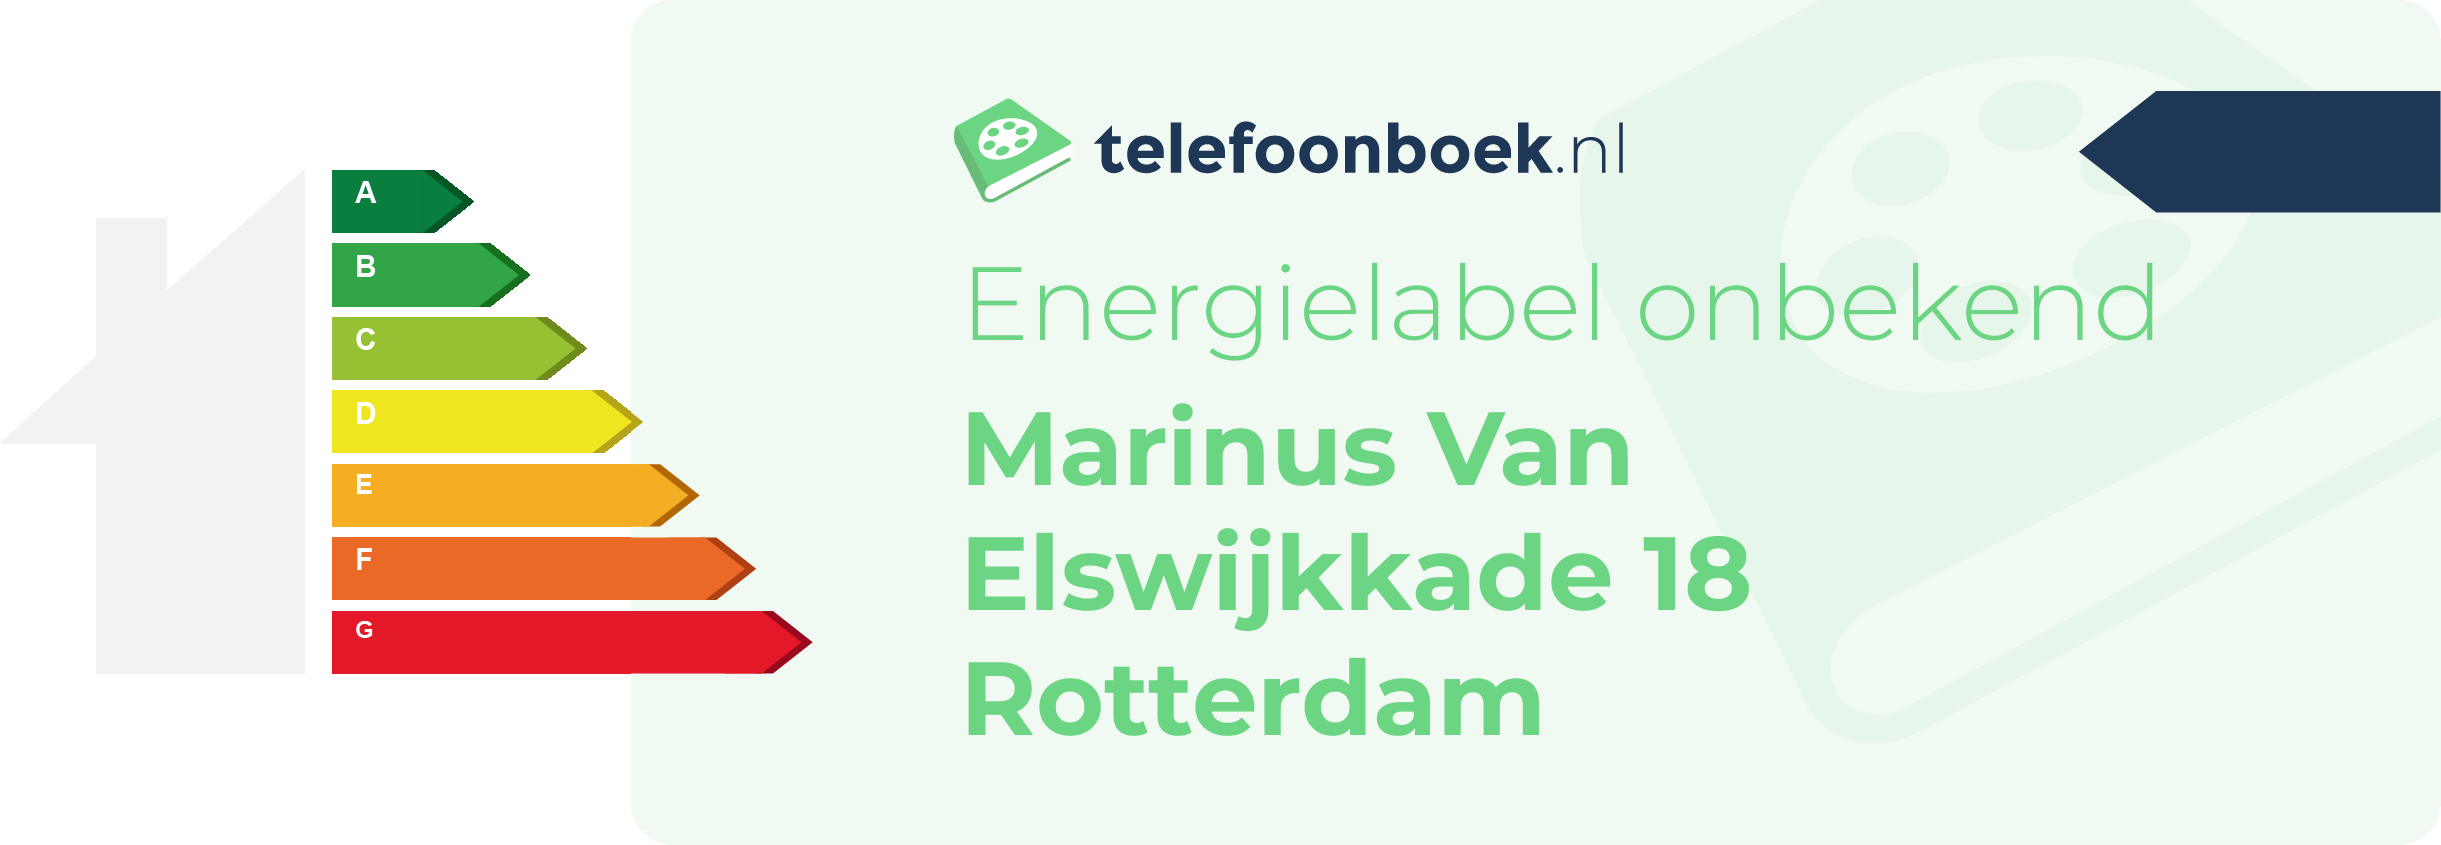 Energielabel Marinus Van Elswijkkade 18 Rotterdam